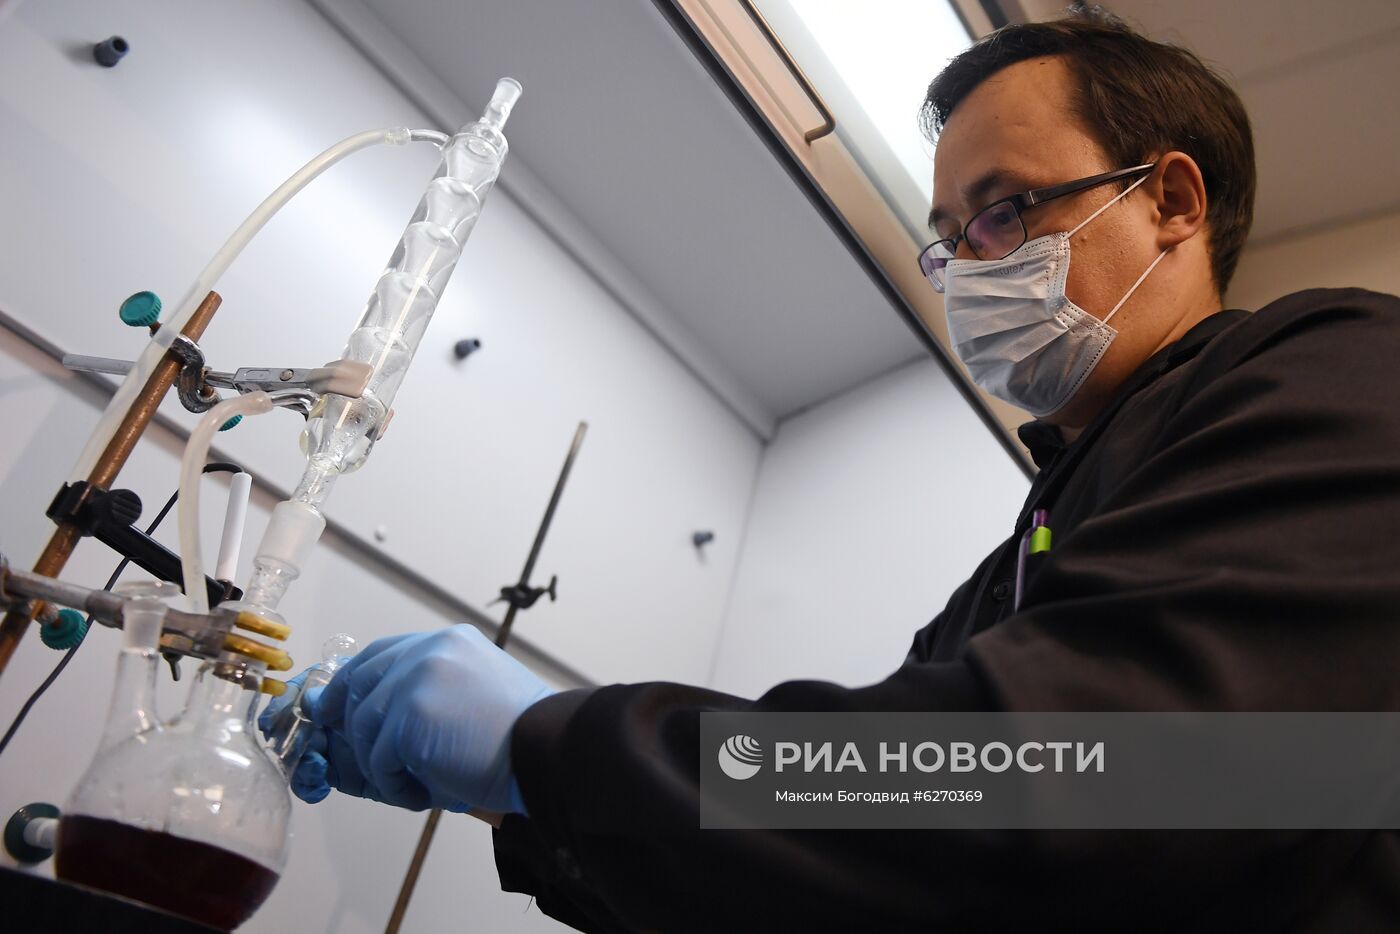 Производство тест-систем на антитела к COVID-19 в Казани